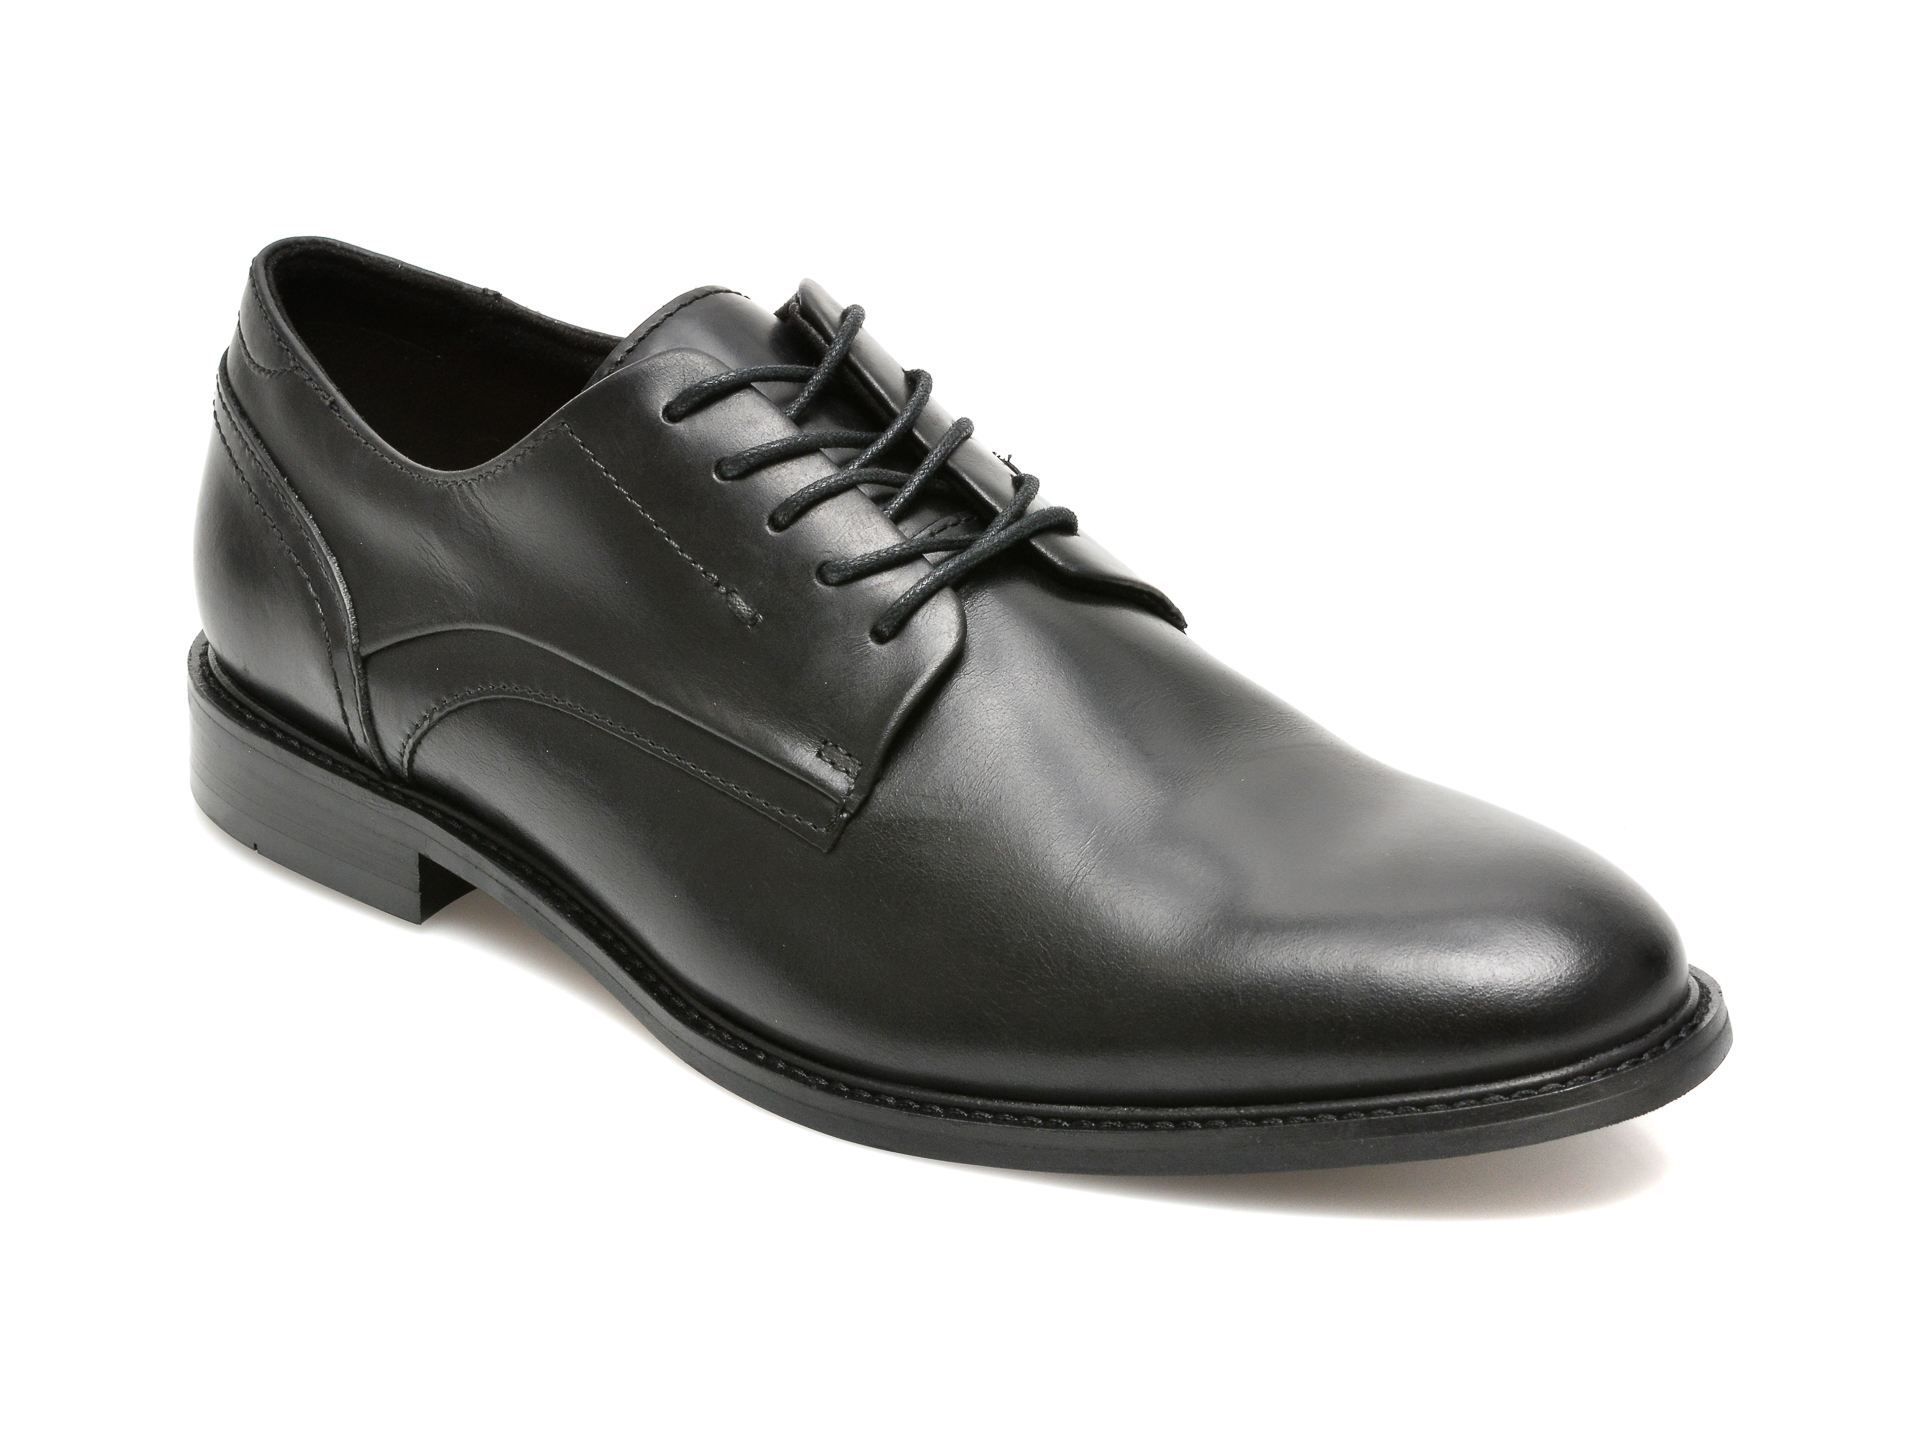 Pantofi ALDO negri, LOBSTERFLEX001, din piele naturala Aldo